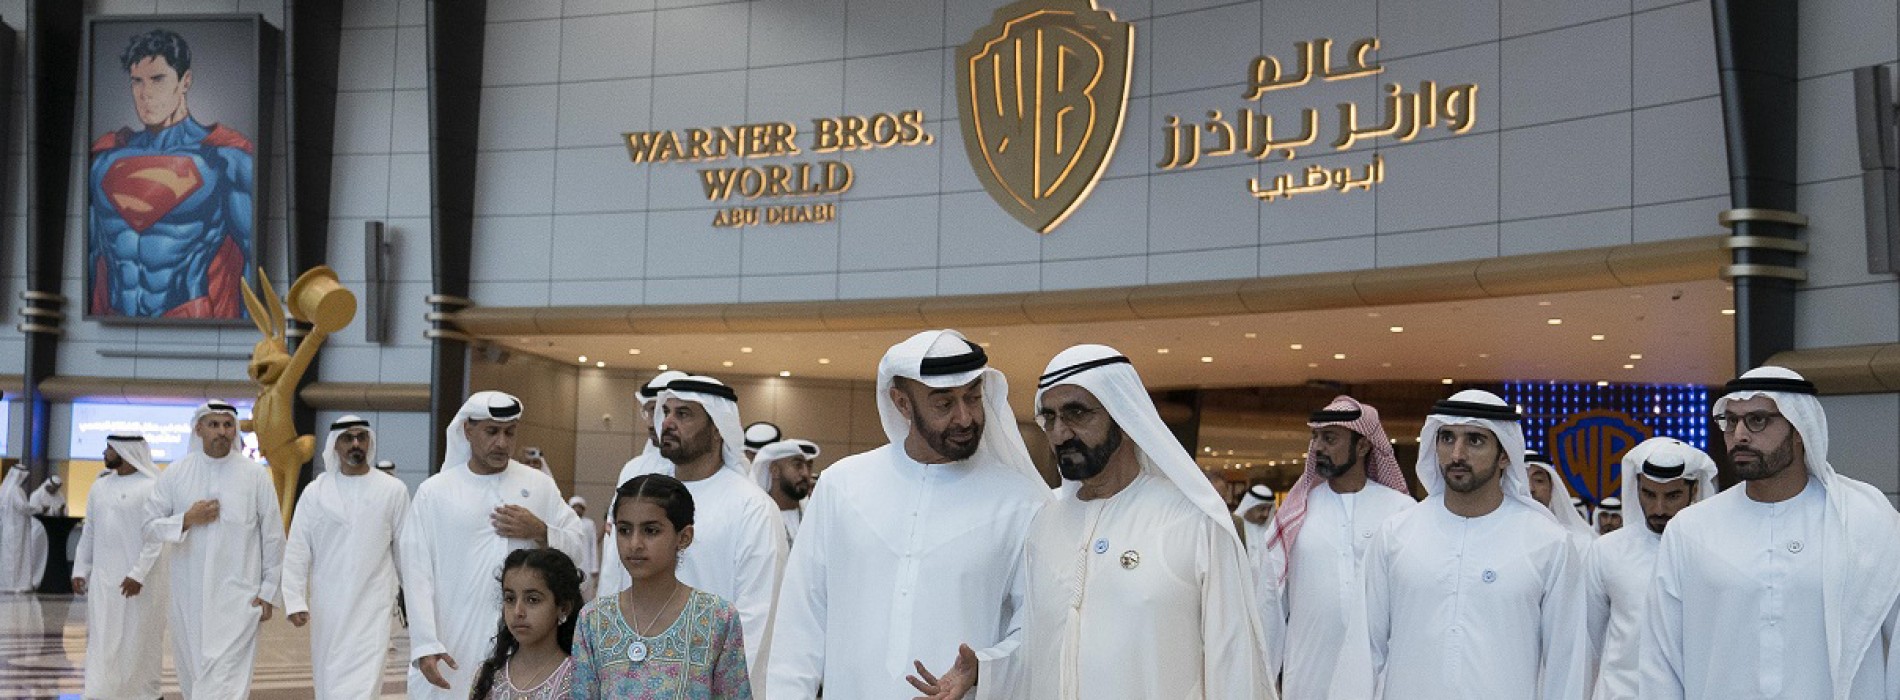 Warner Bros. World Abu Dhabi opens doors in Yas Island